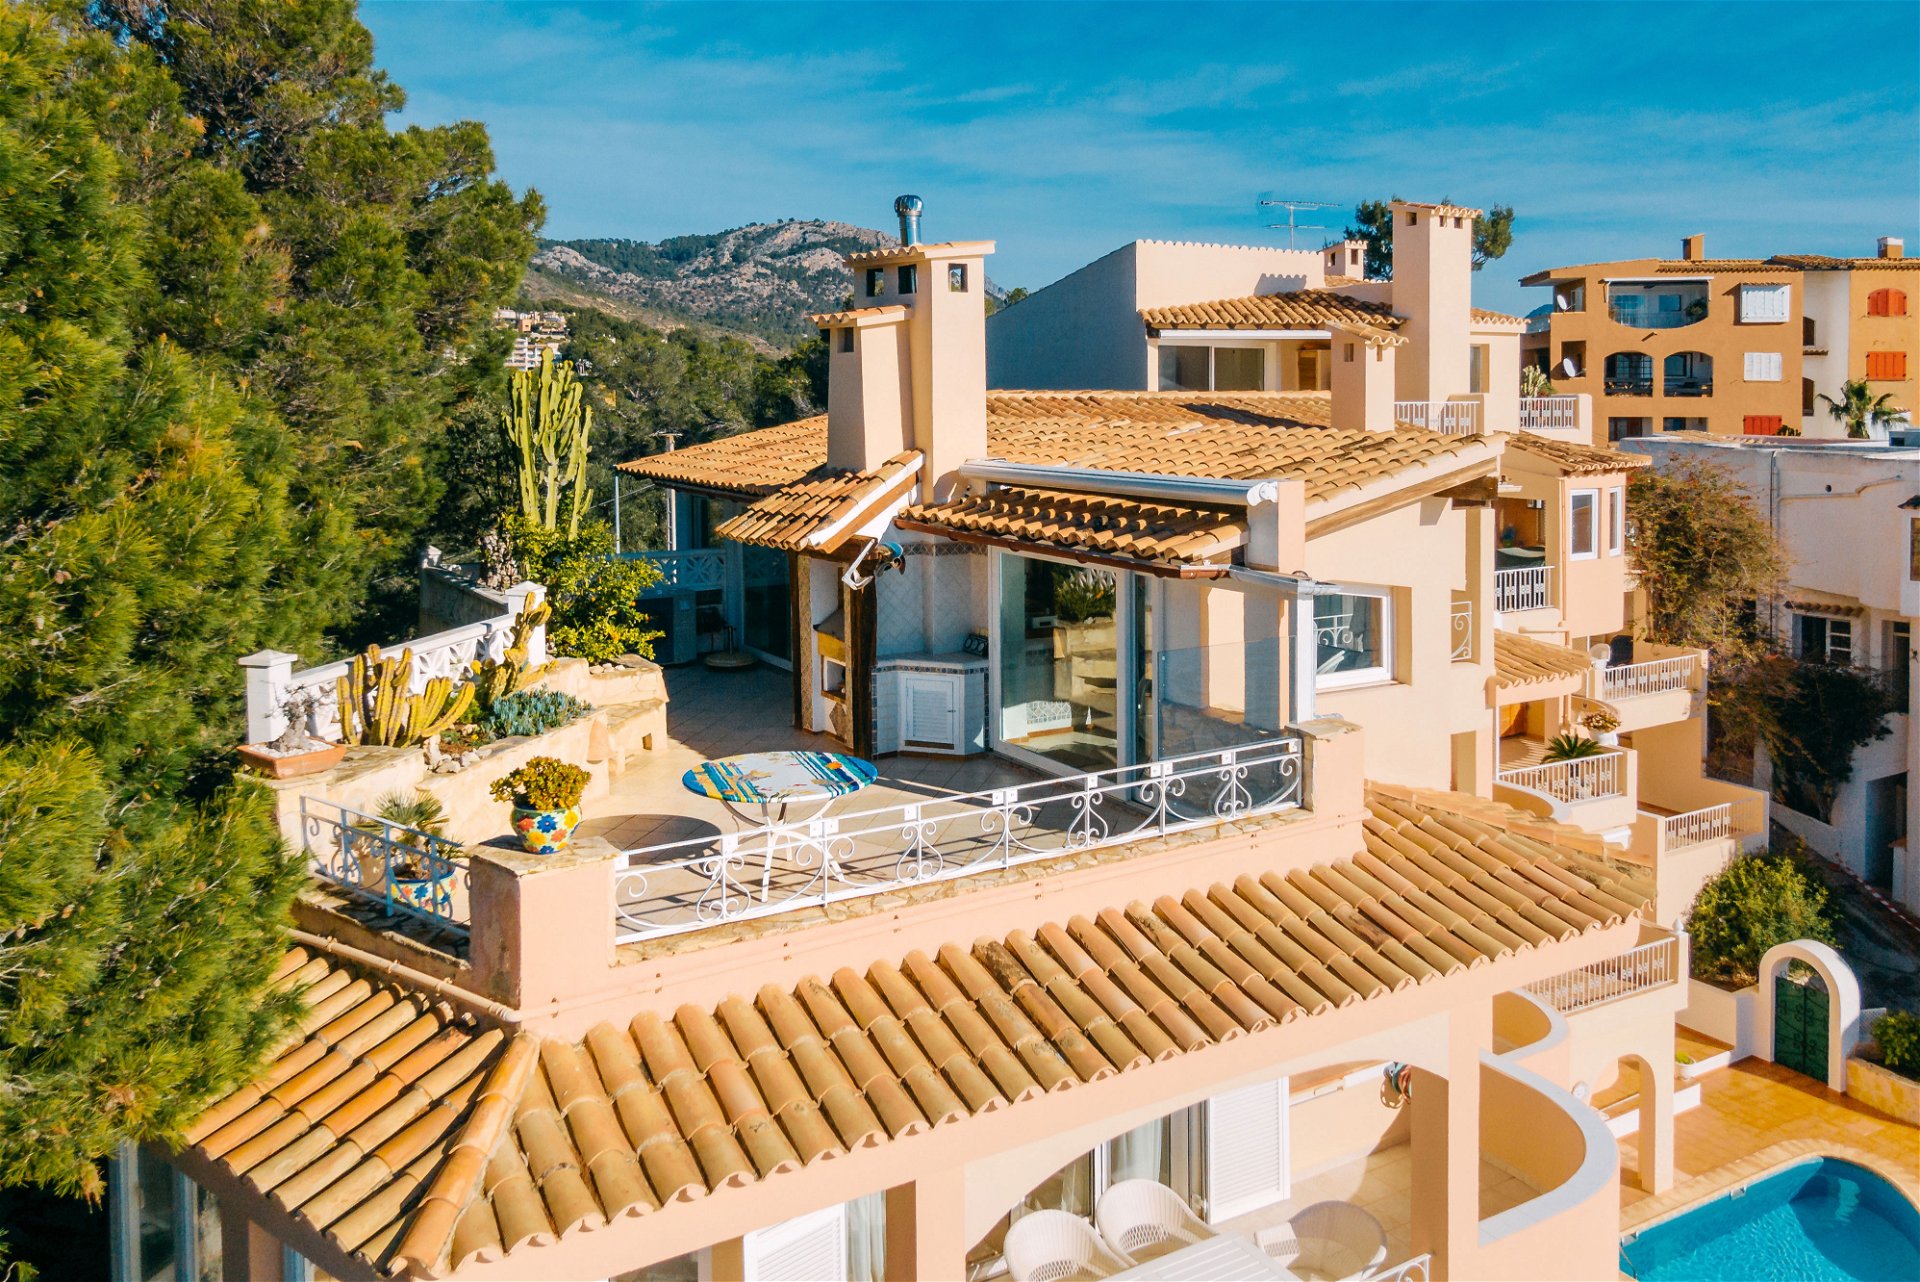 Mallorca stellt seinen Status als sicherer Hafen für Immobilien weiter unter Beweis. Mit 1,7 Millionen Euro gehört diese traumhafte Penthouse-Wohnung auf zwei Ebenen sogar zu den günstigeren Angeboten. Sie ist Teil einer kleinen Luxus-Wohnanlage mit zehn Wohneinheiten, die im oberen Teil der malerischen Bucht von Cala Fornells liegt. 

